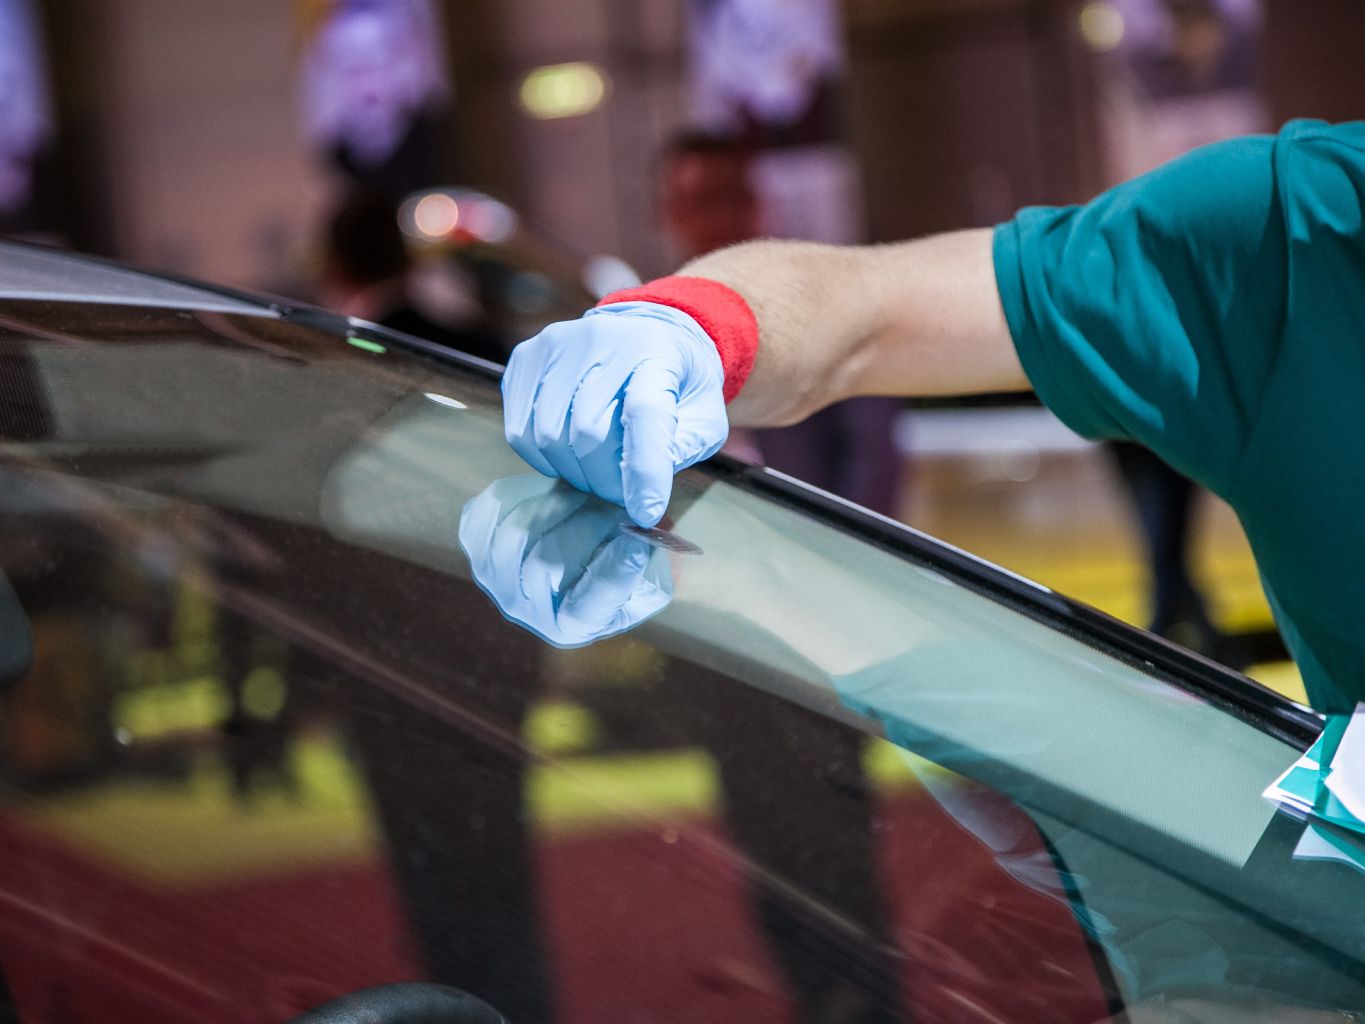 Reparatur Steinschlag Auto Glas Windschutzscheibe Flüssigkeit